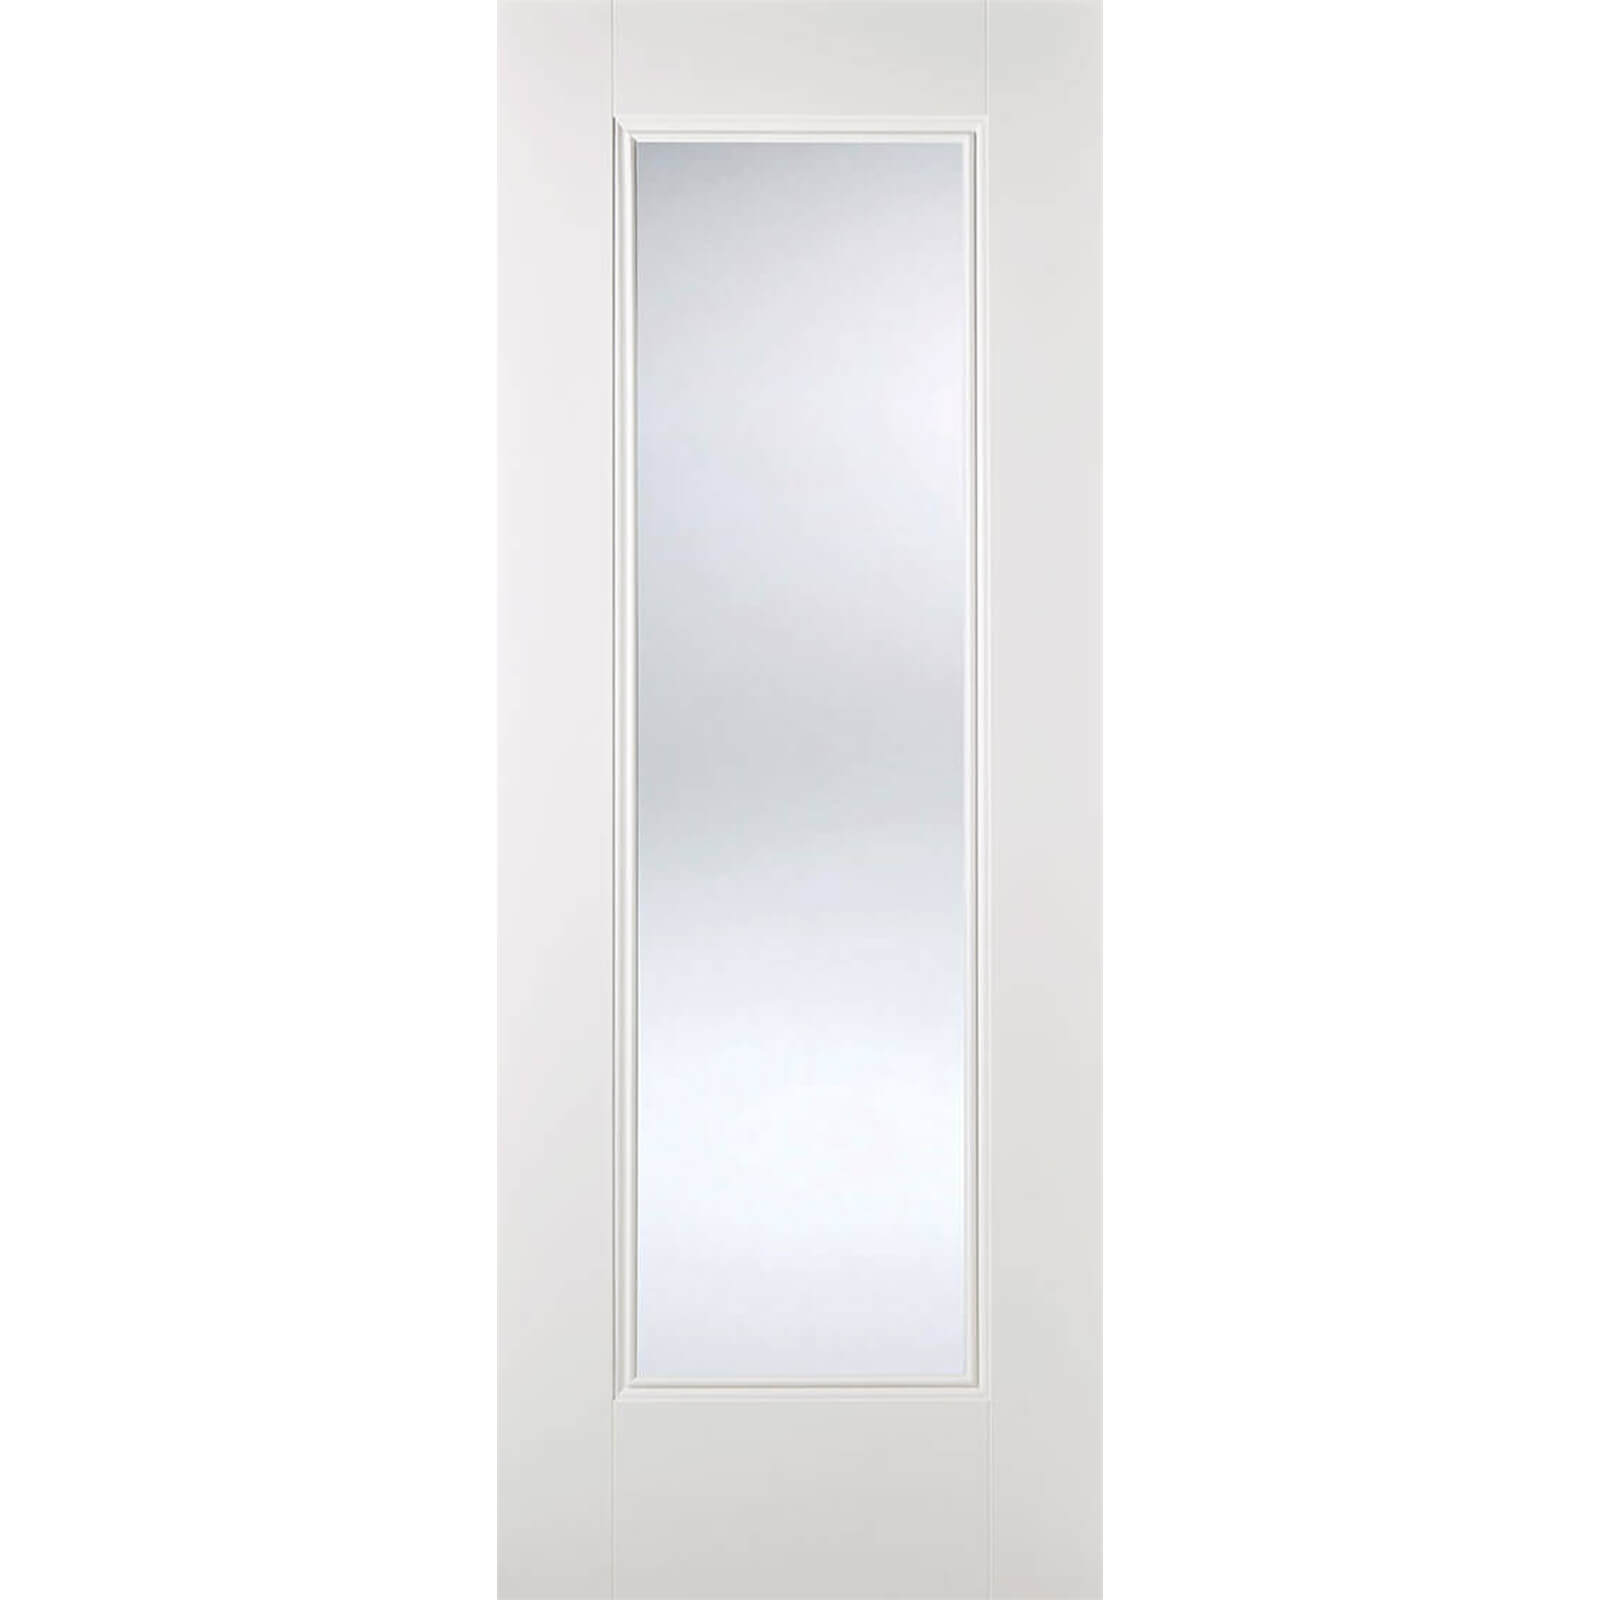 Eindhoven Internal Glazed Primed White 1 Lite Door - 686 x 1981mm